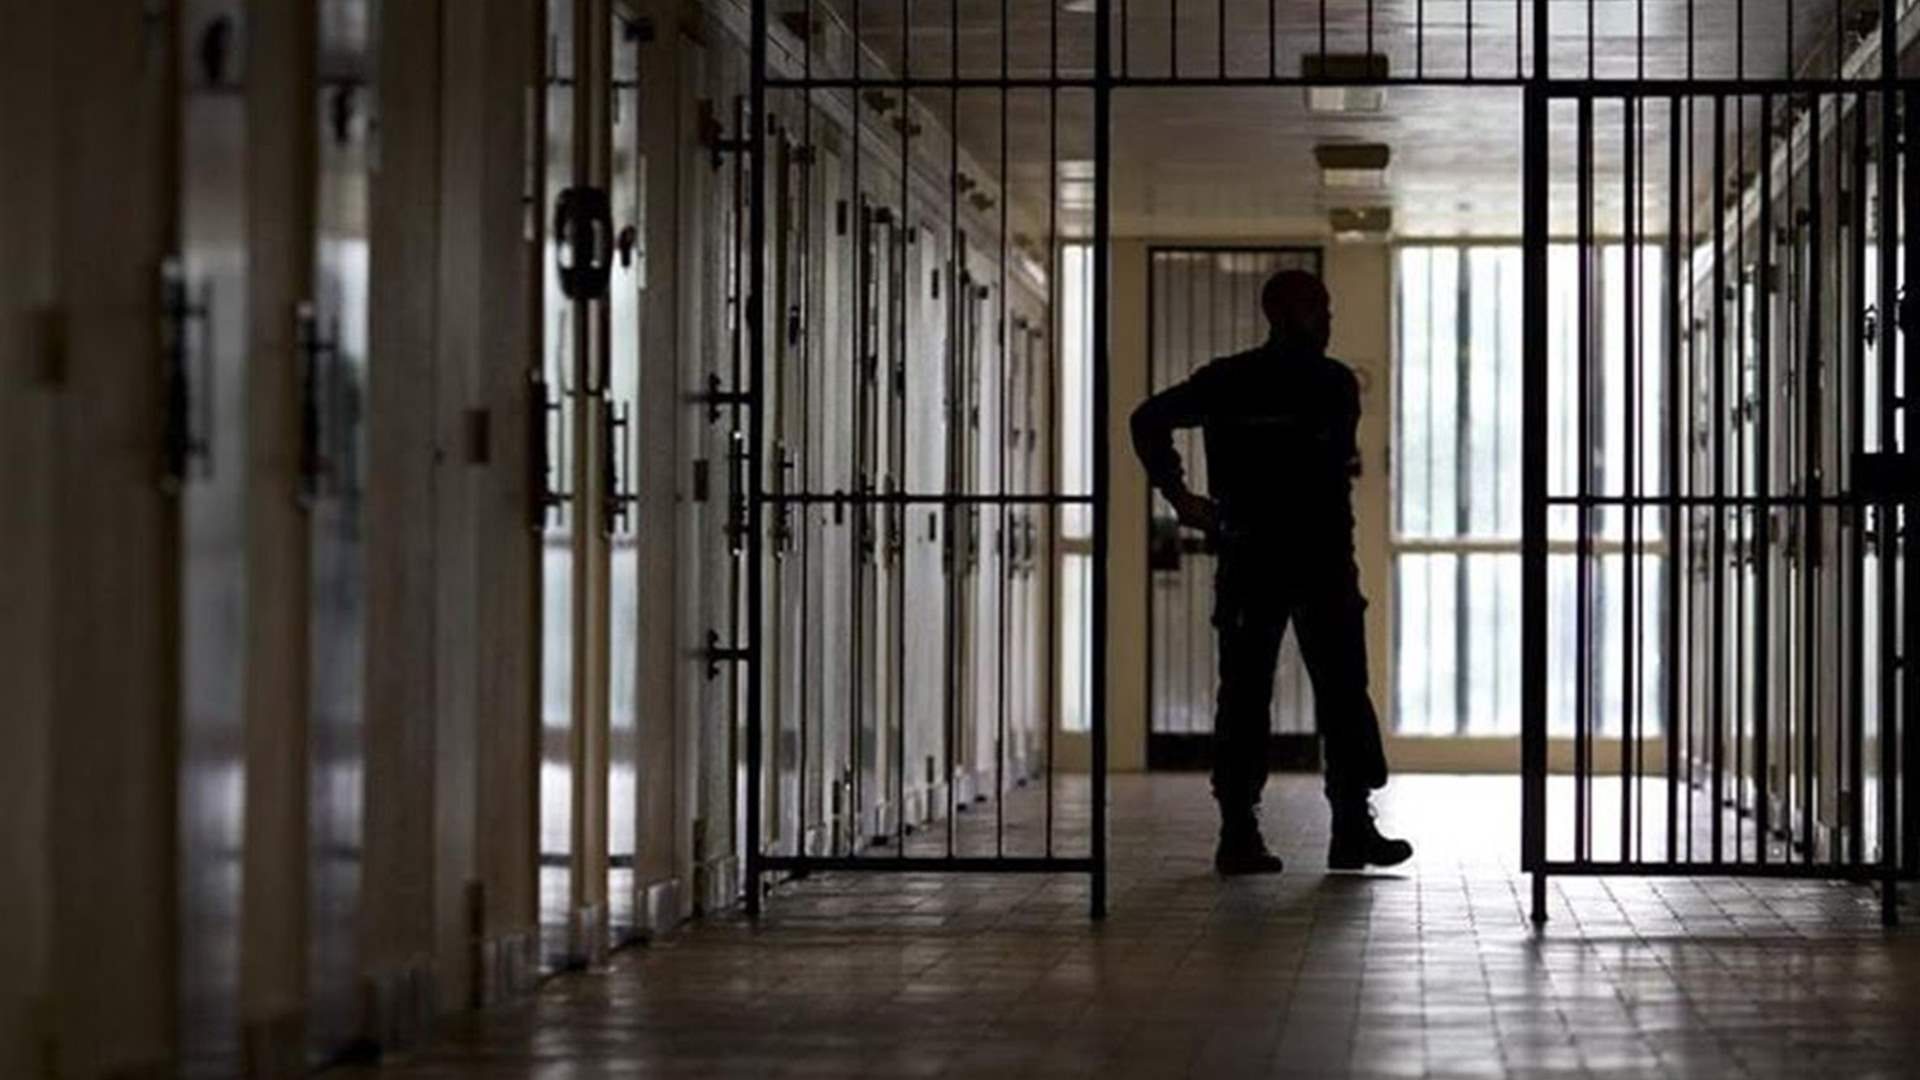 إيطاليا تعتقل 13 من حراس سجن للإشتباه في تعذيبهم نزلاء قصر